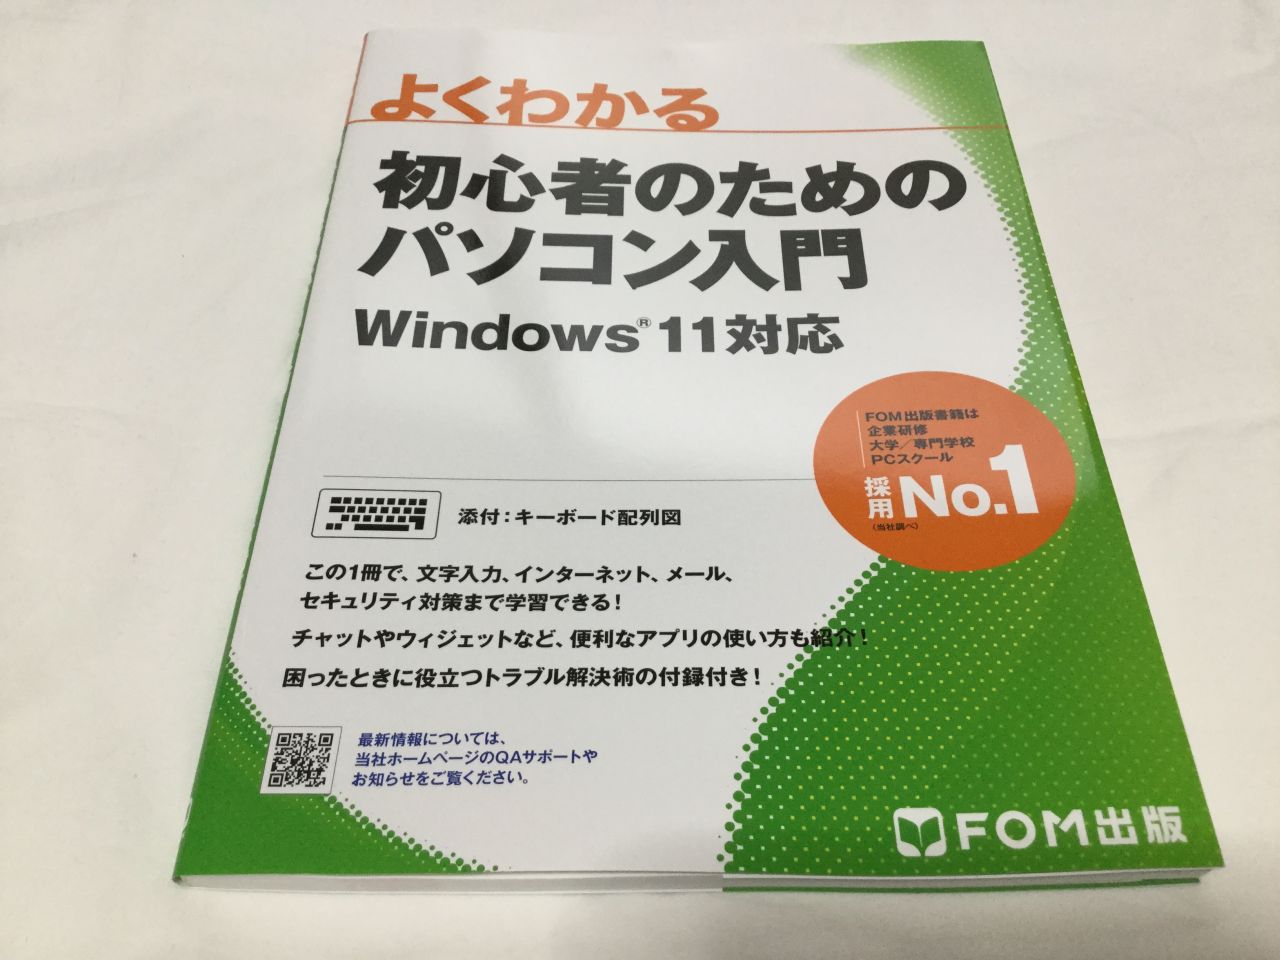 『よくわかる 初心者のためのパソコン入門Windows 11対応』を実際に買って読んでみた